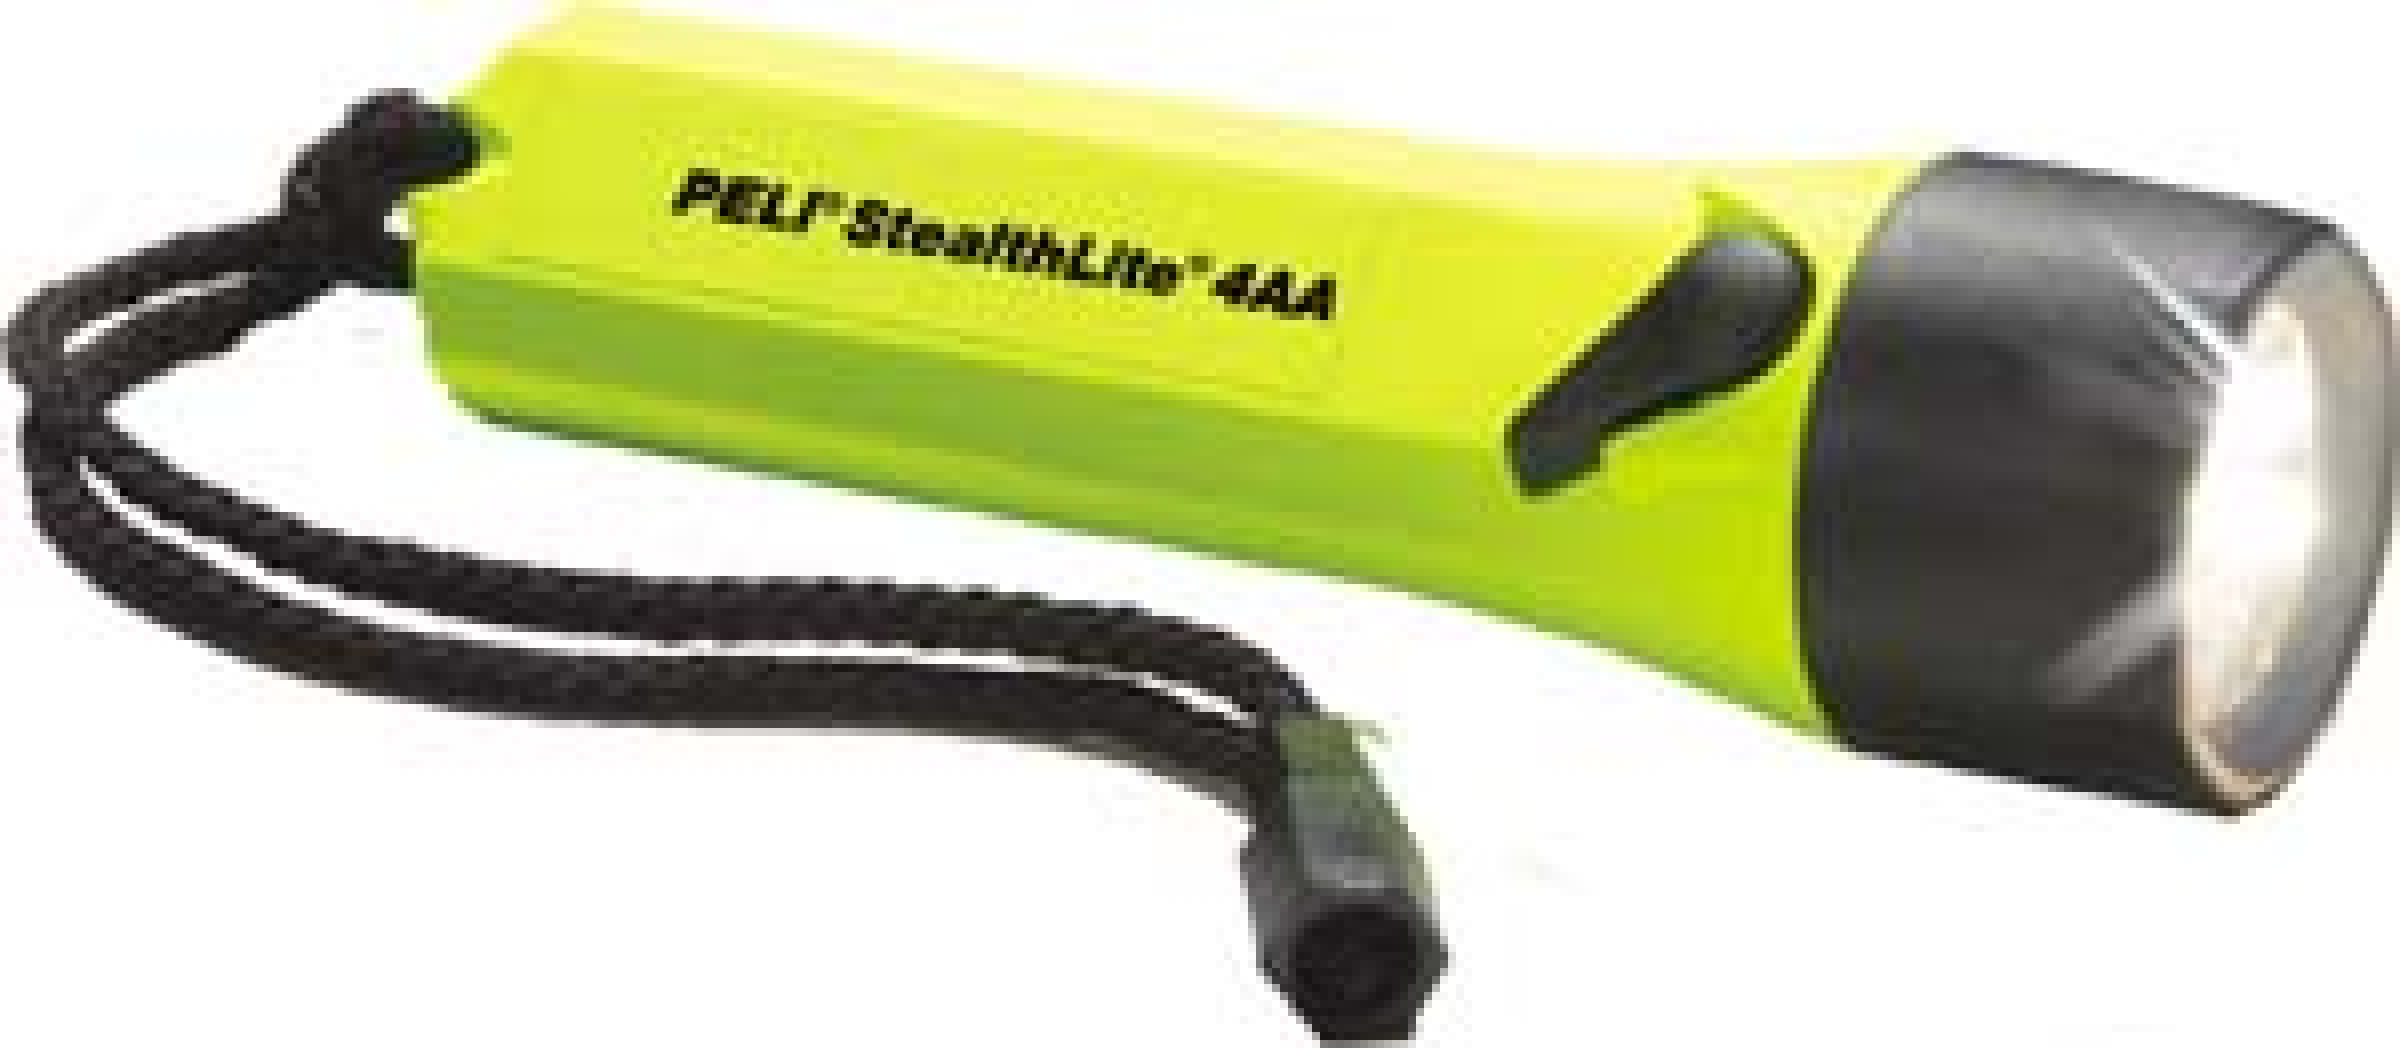 Peli StealthLite 2400Z1 ATEX Zone 1 yellow